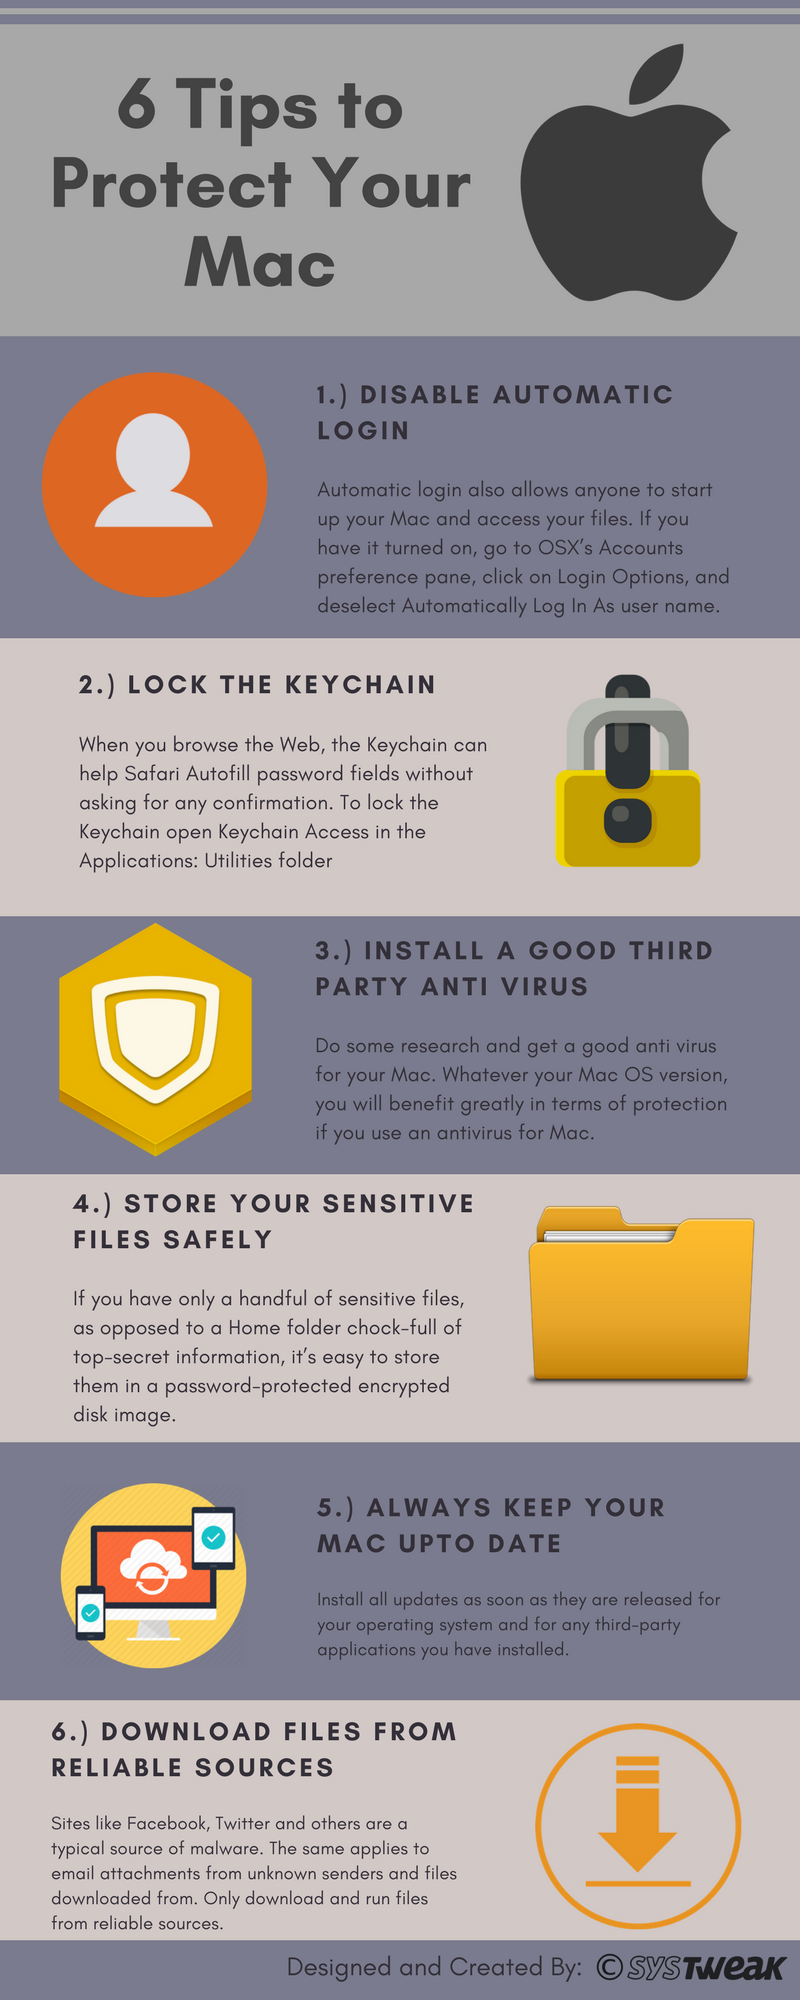 6 consells per protegir el vostre Mac: infografia